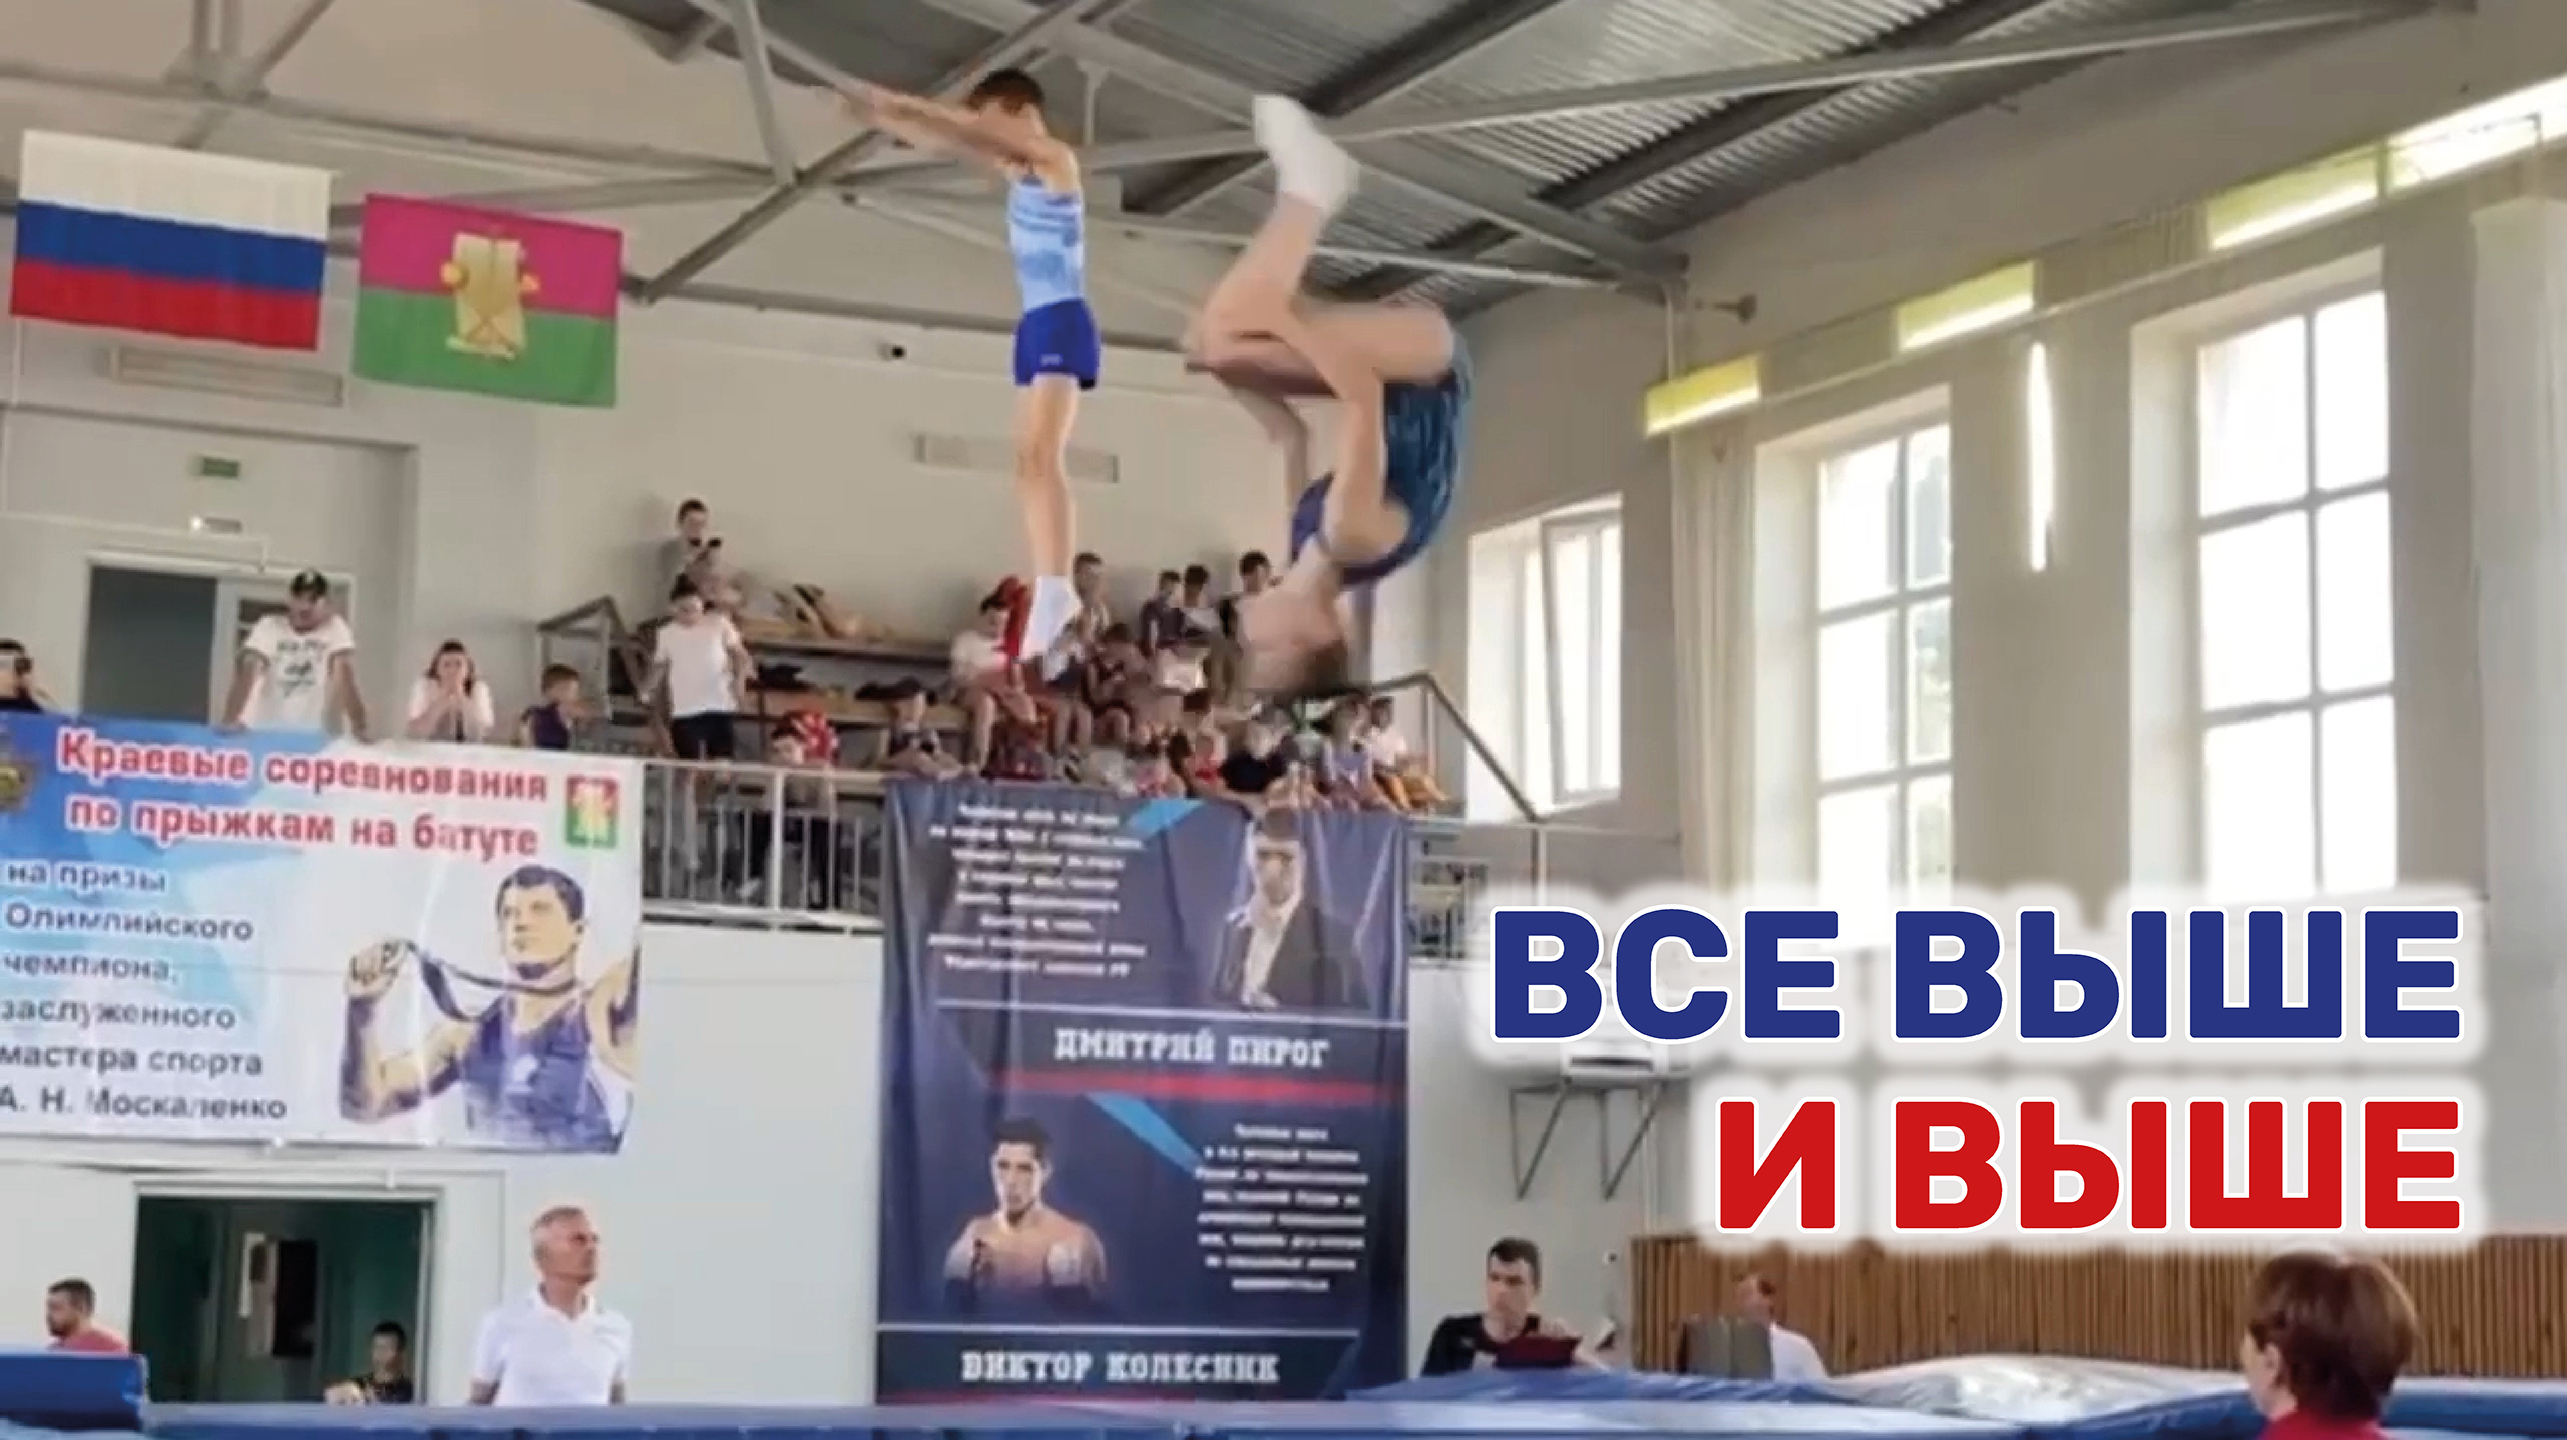 Турнир на призы Олимпийского чемпиона Александра Москаленко прошел в Брюховецком районе